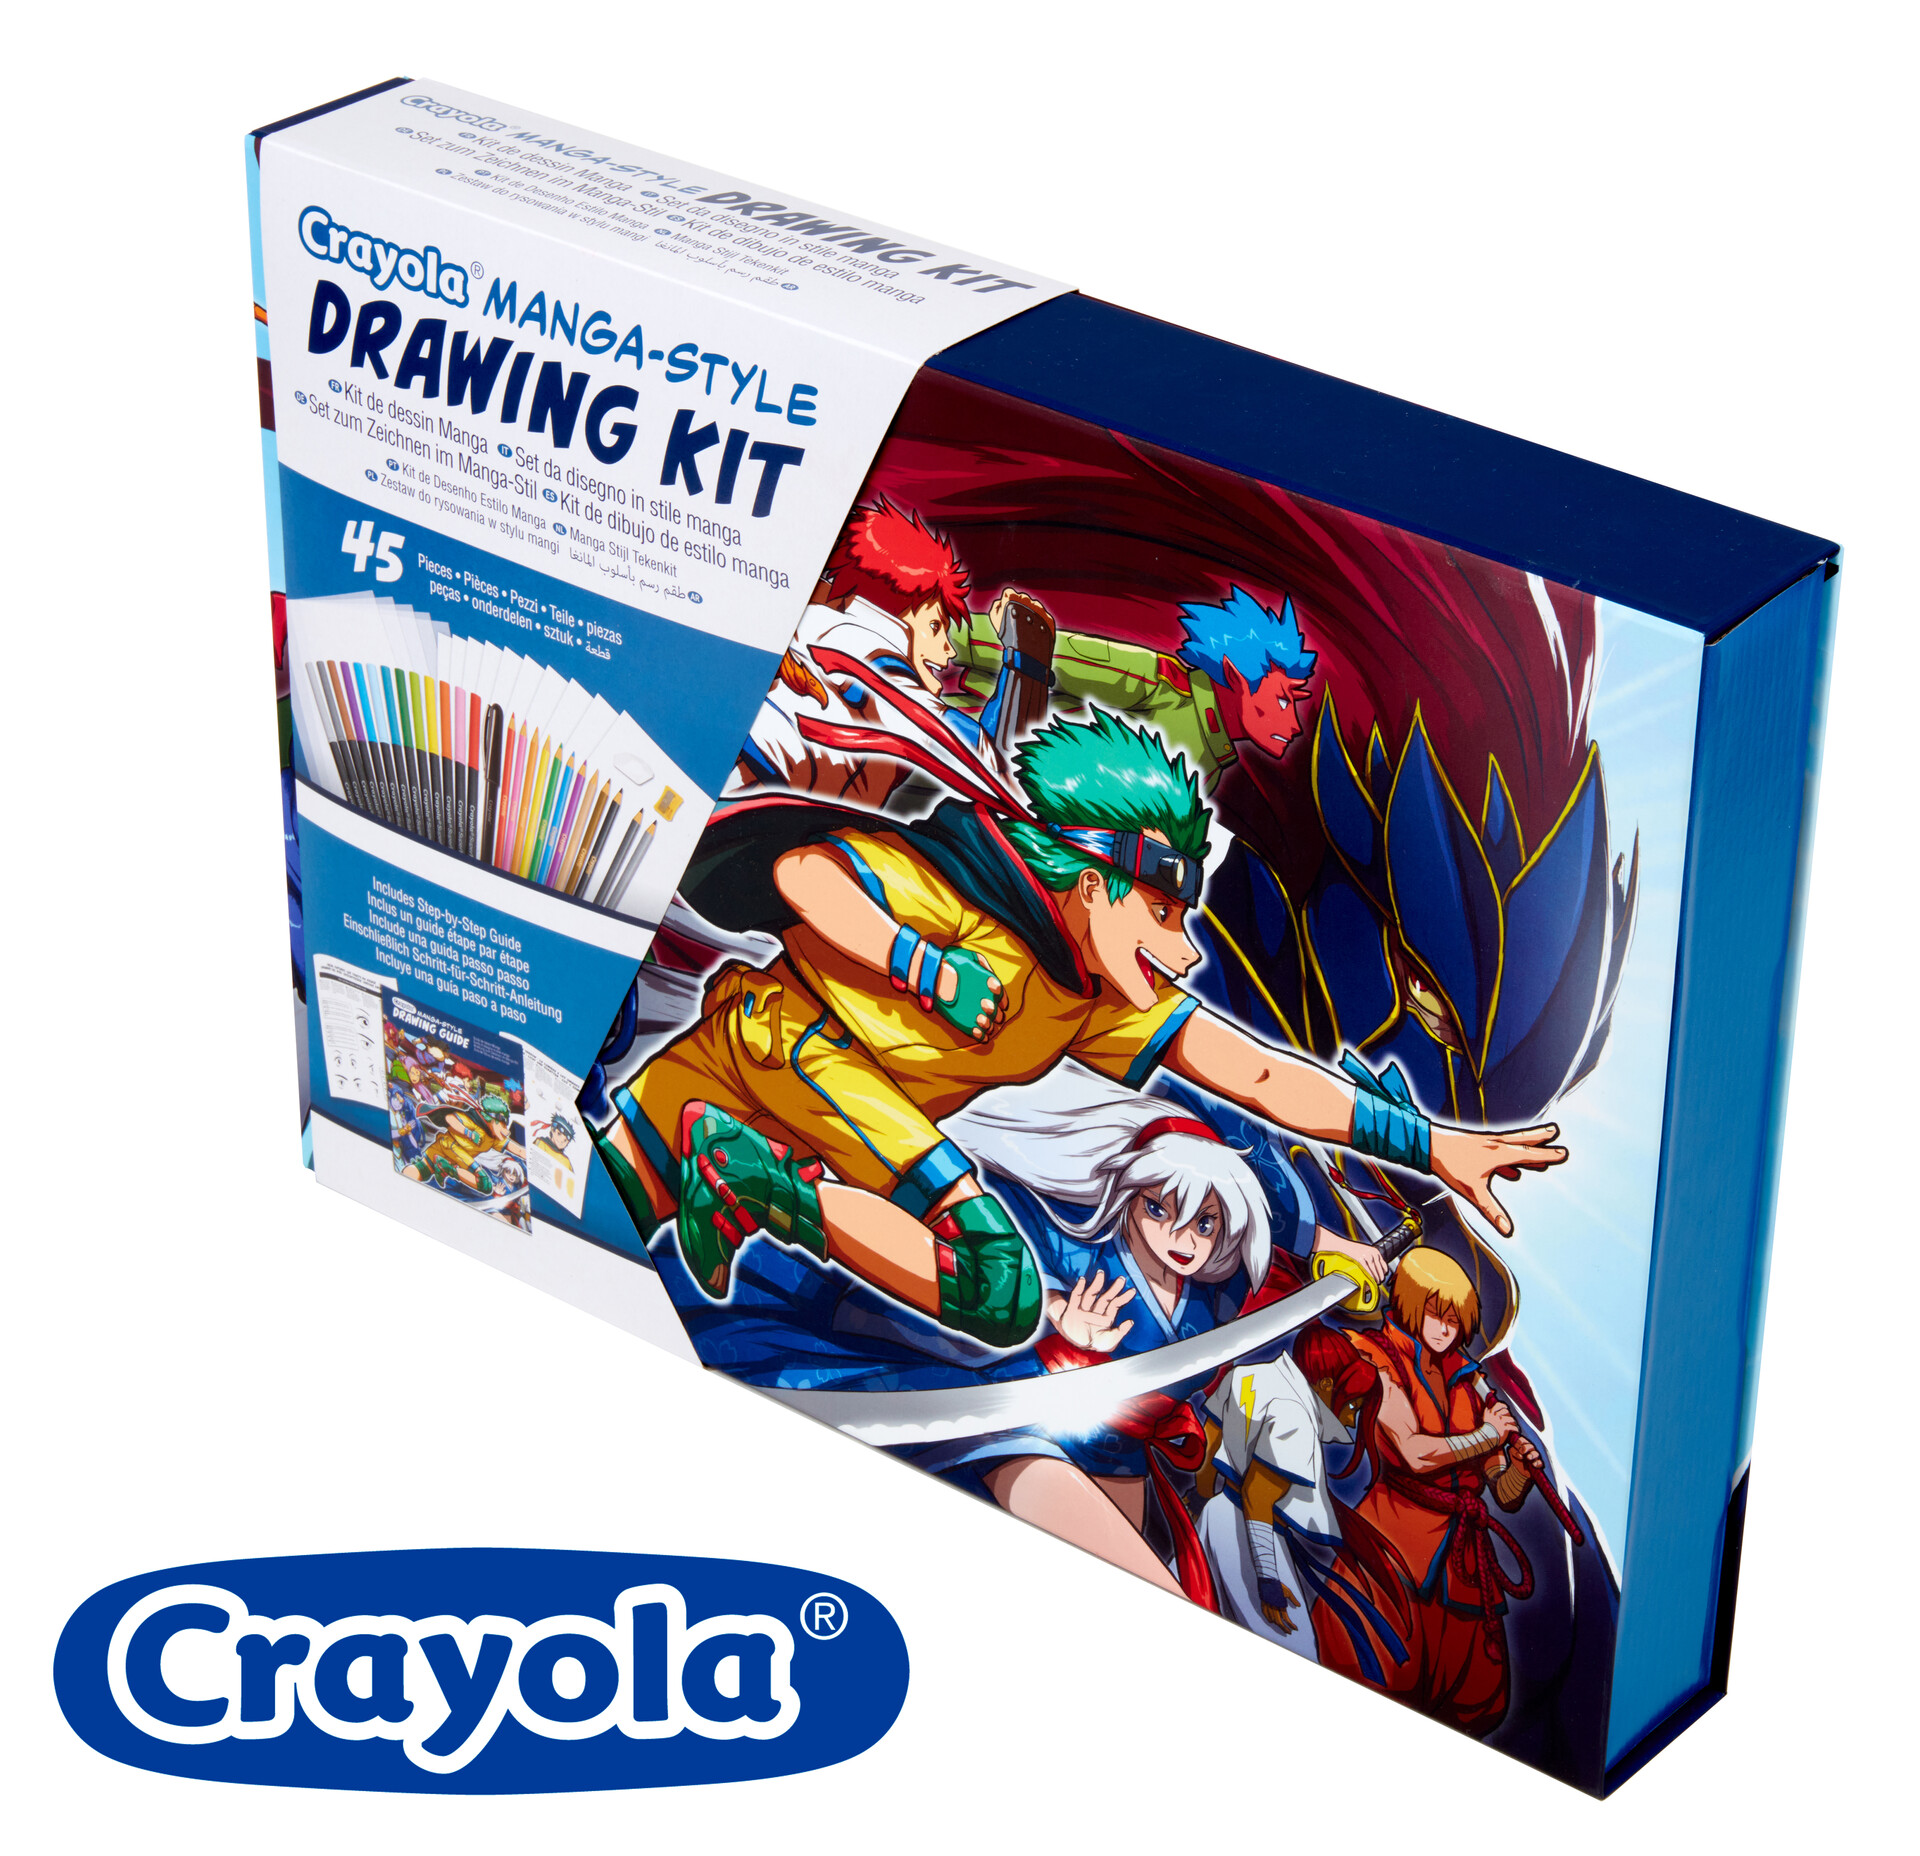 ArtStation - Crayola Manga-Style Drawing Kit